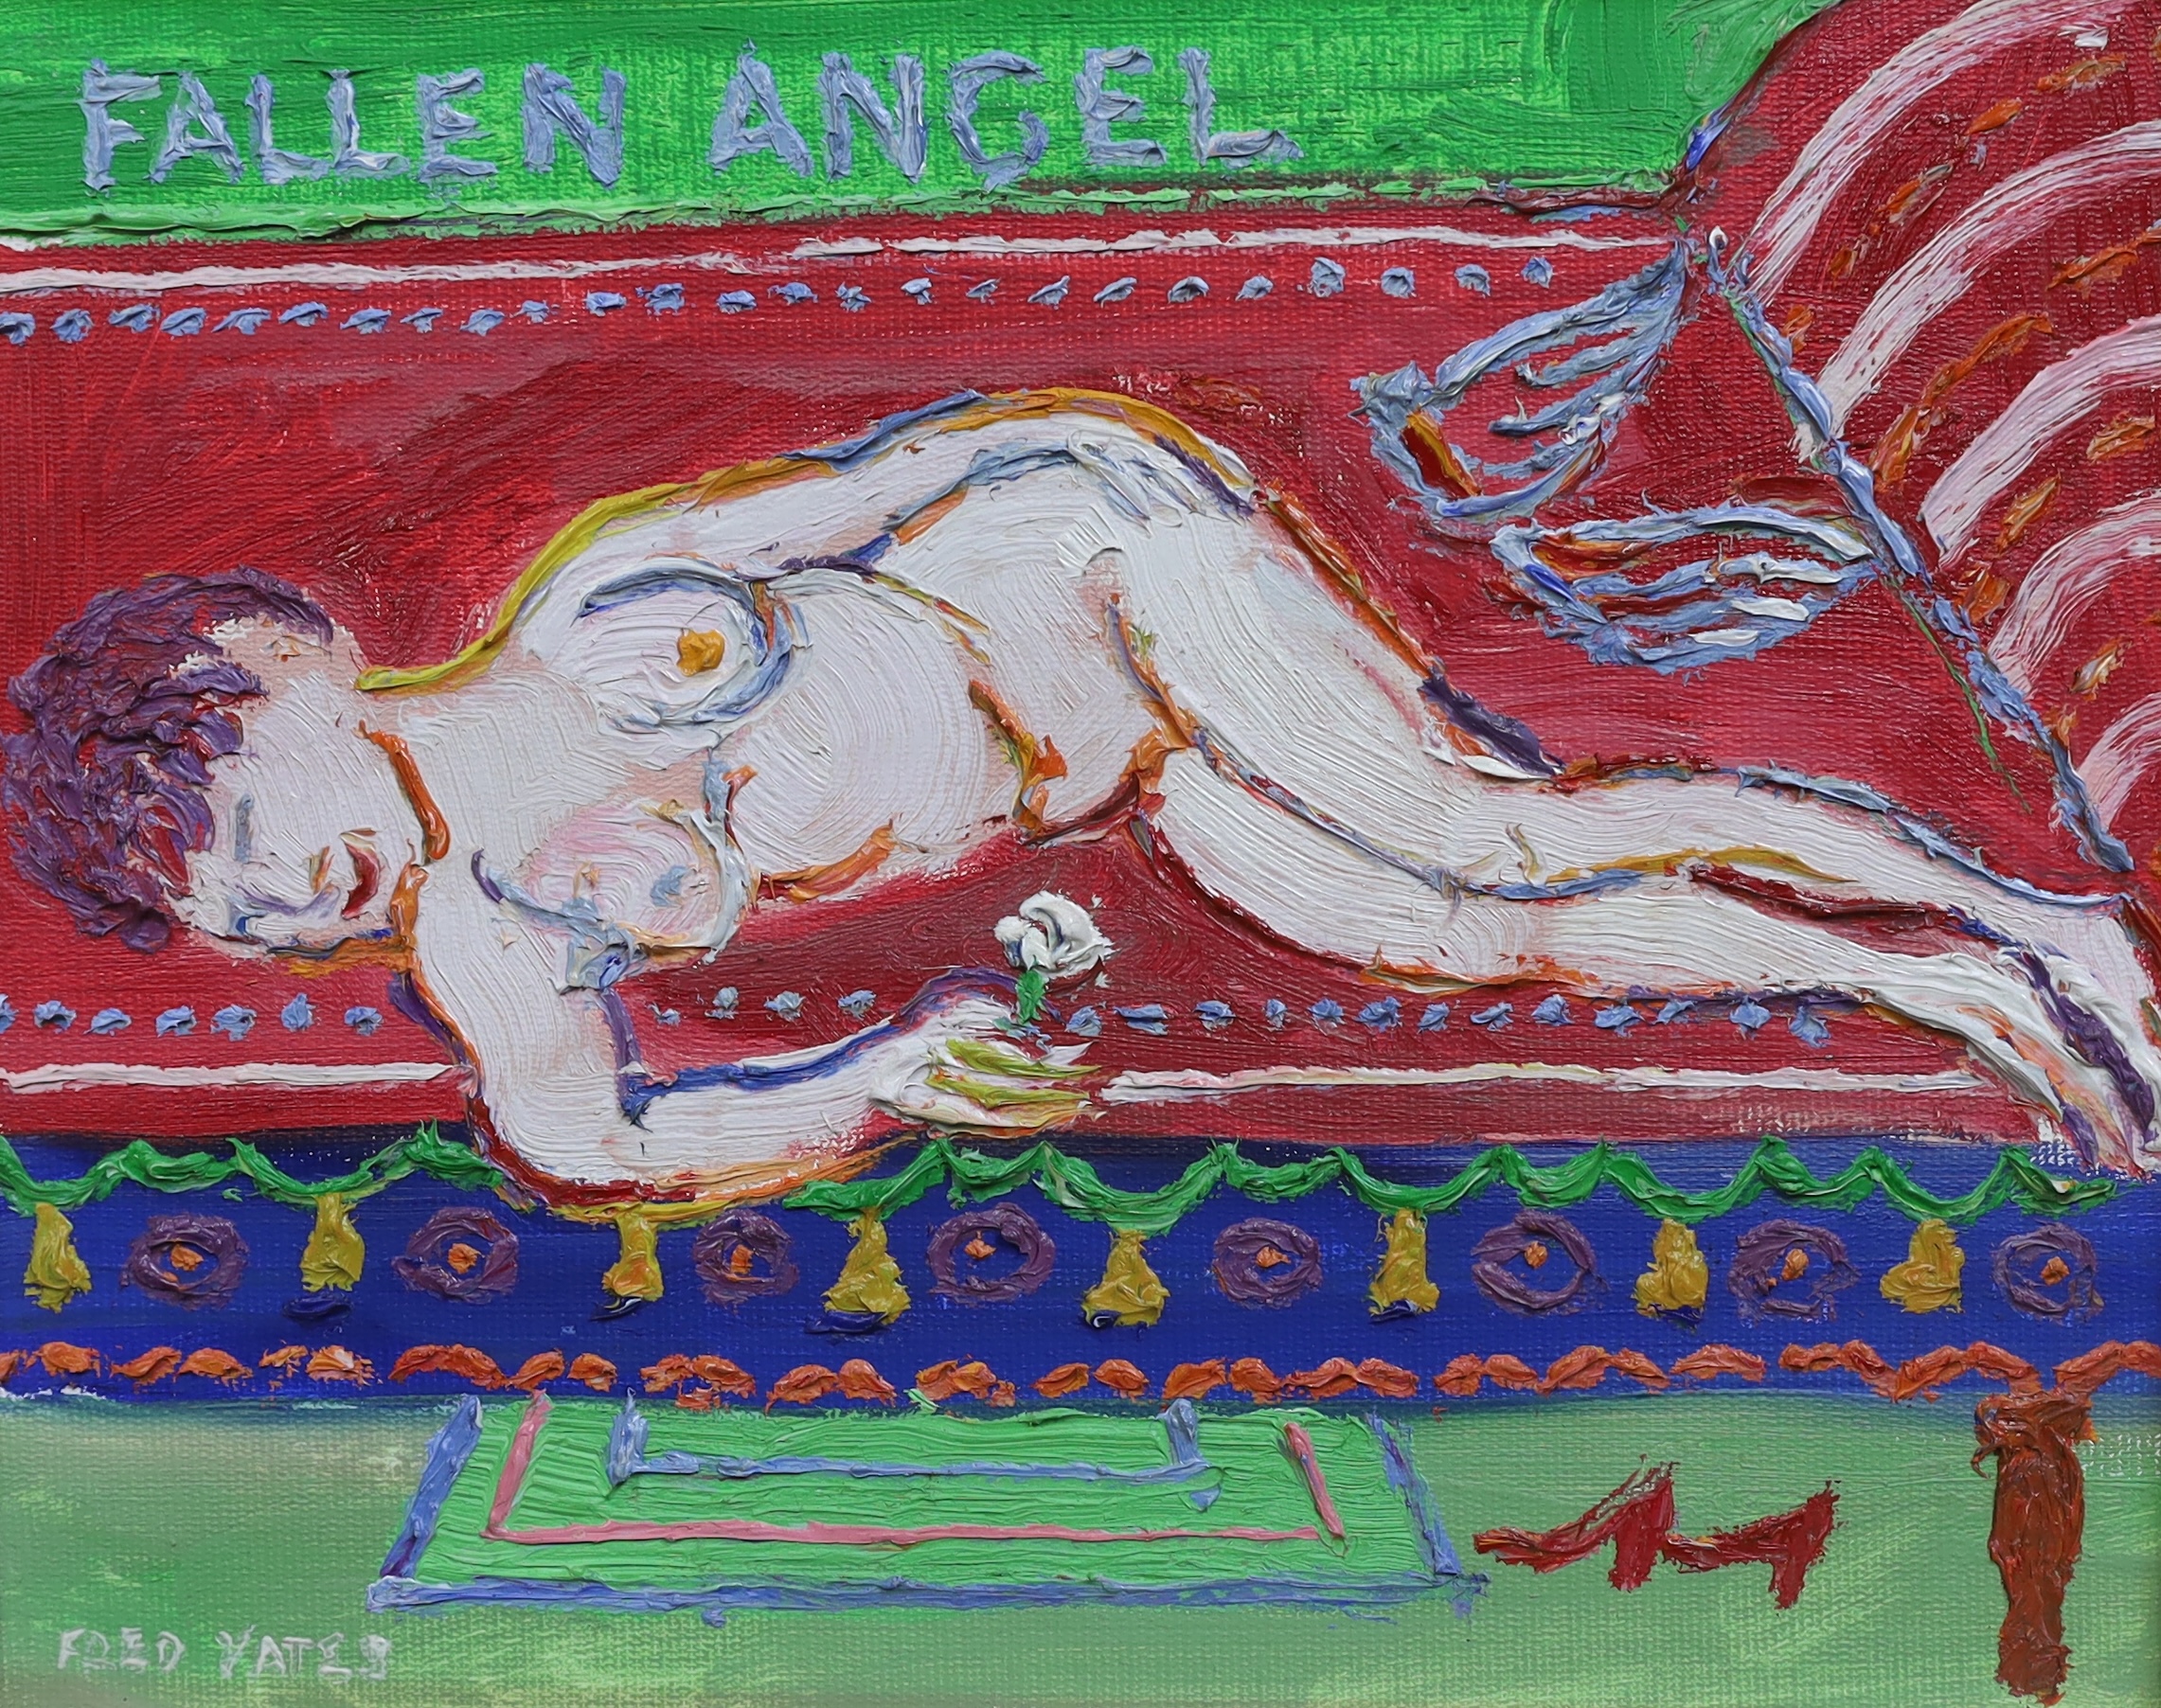 Fred Yates (English, 1922-2008), 'Fallen Angel', oil on board, 20 x 25cm